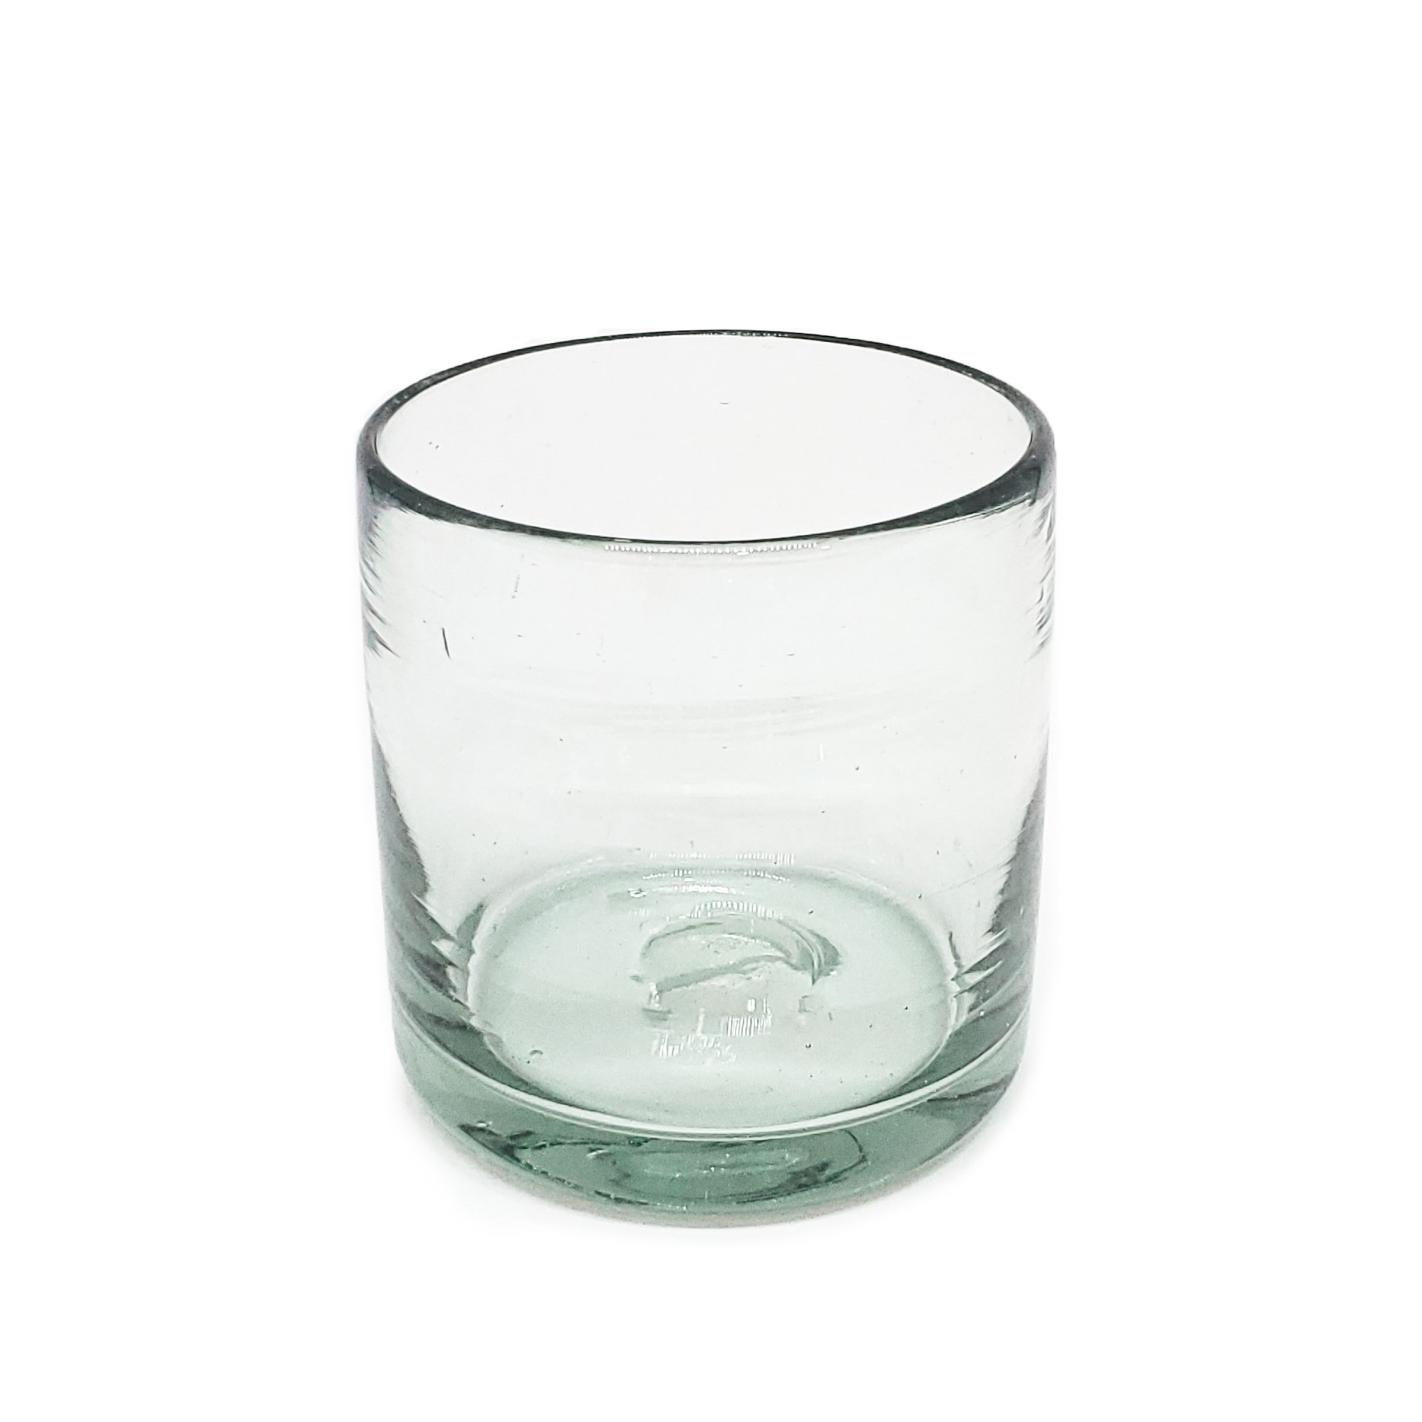 Novedades / Juego de 6 vasos DOF 8oz Transparentes / stos artesanales vasos le darn un toque clsico a su bebida favorita.